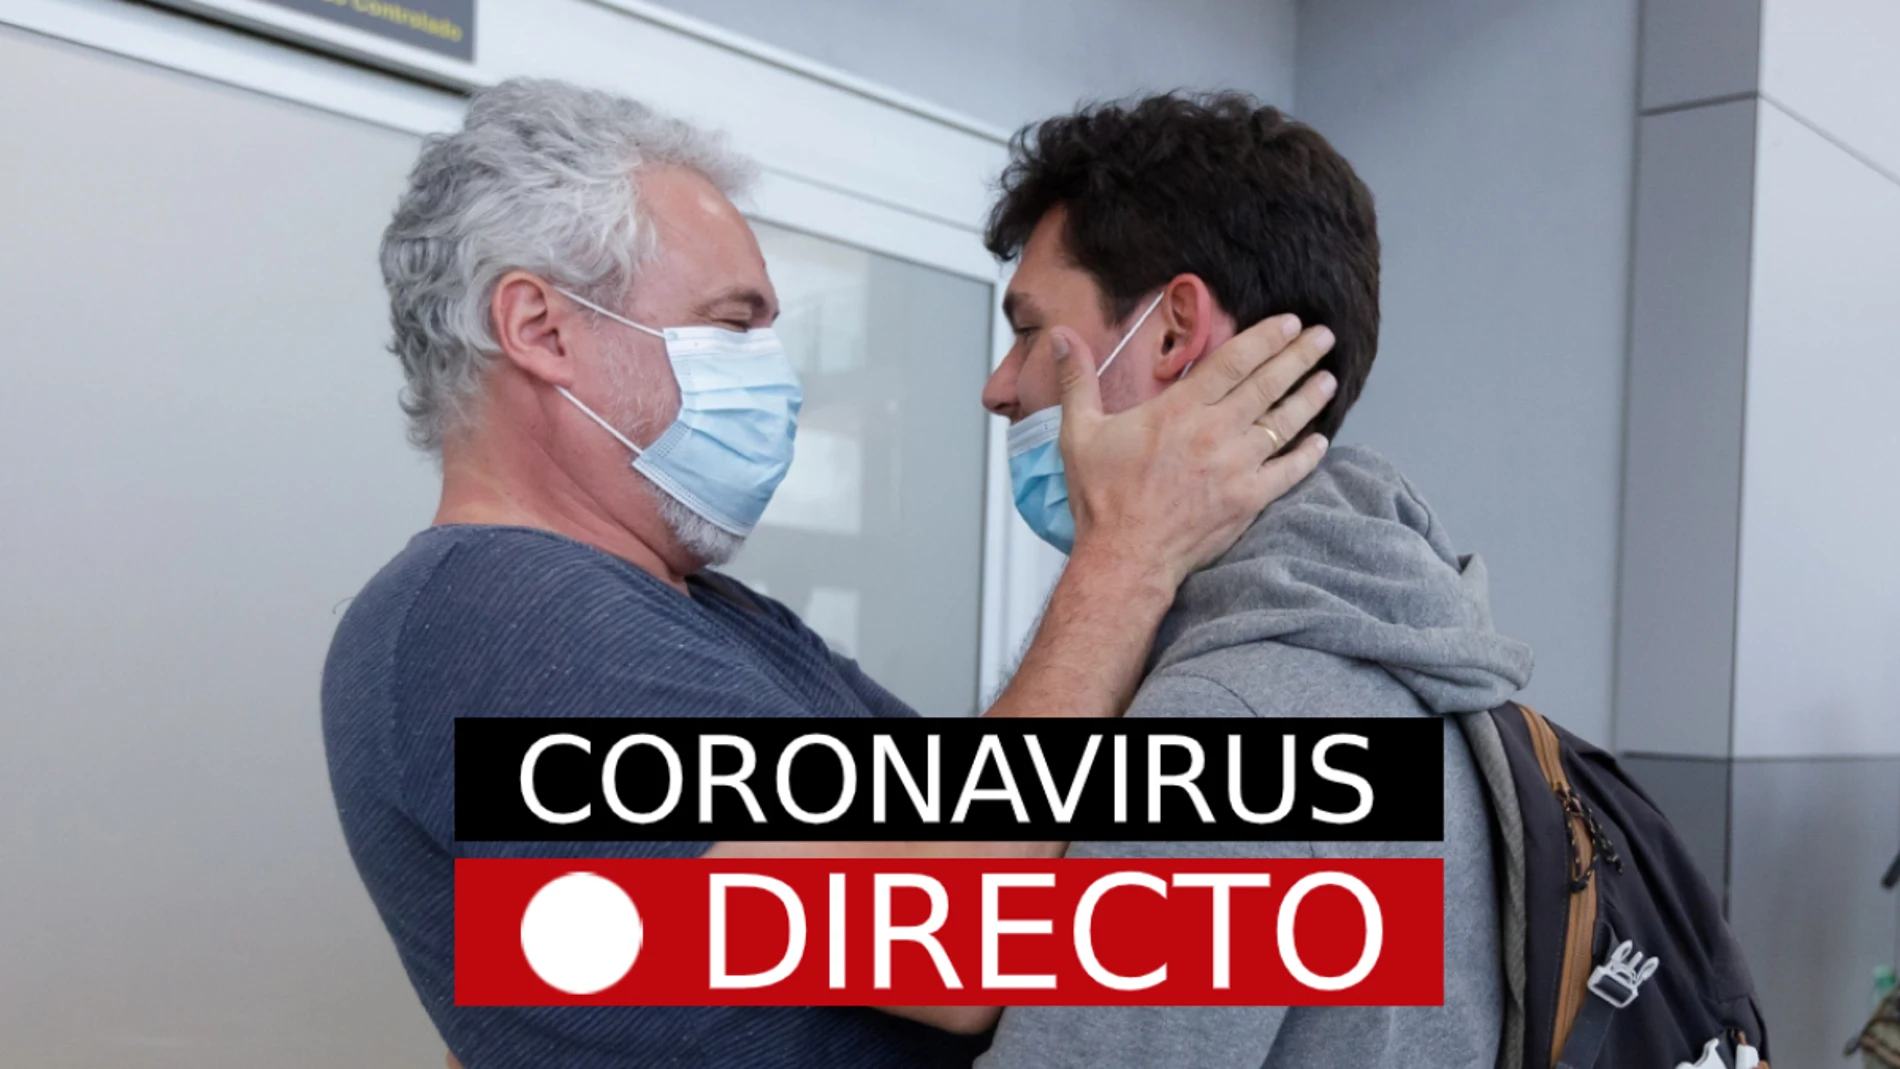 Coronavirus en España: Última hora del homenaje, casos, contagios y noticias de la covid-19 en el mundo hoy, en directo 